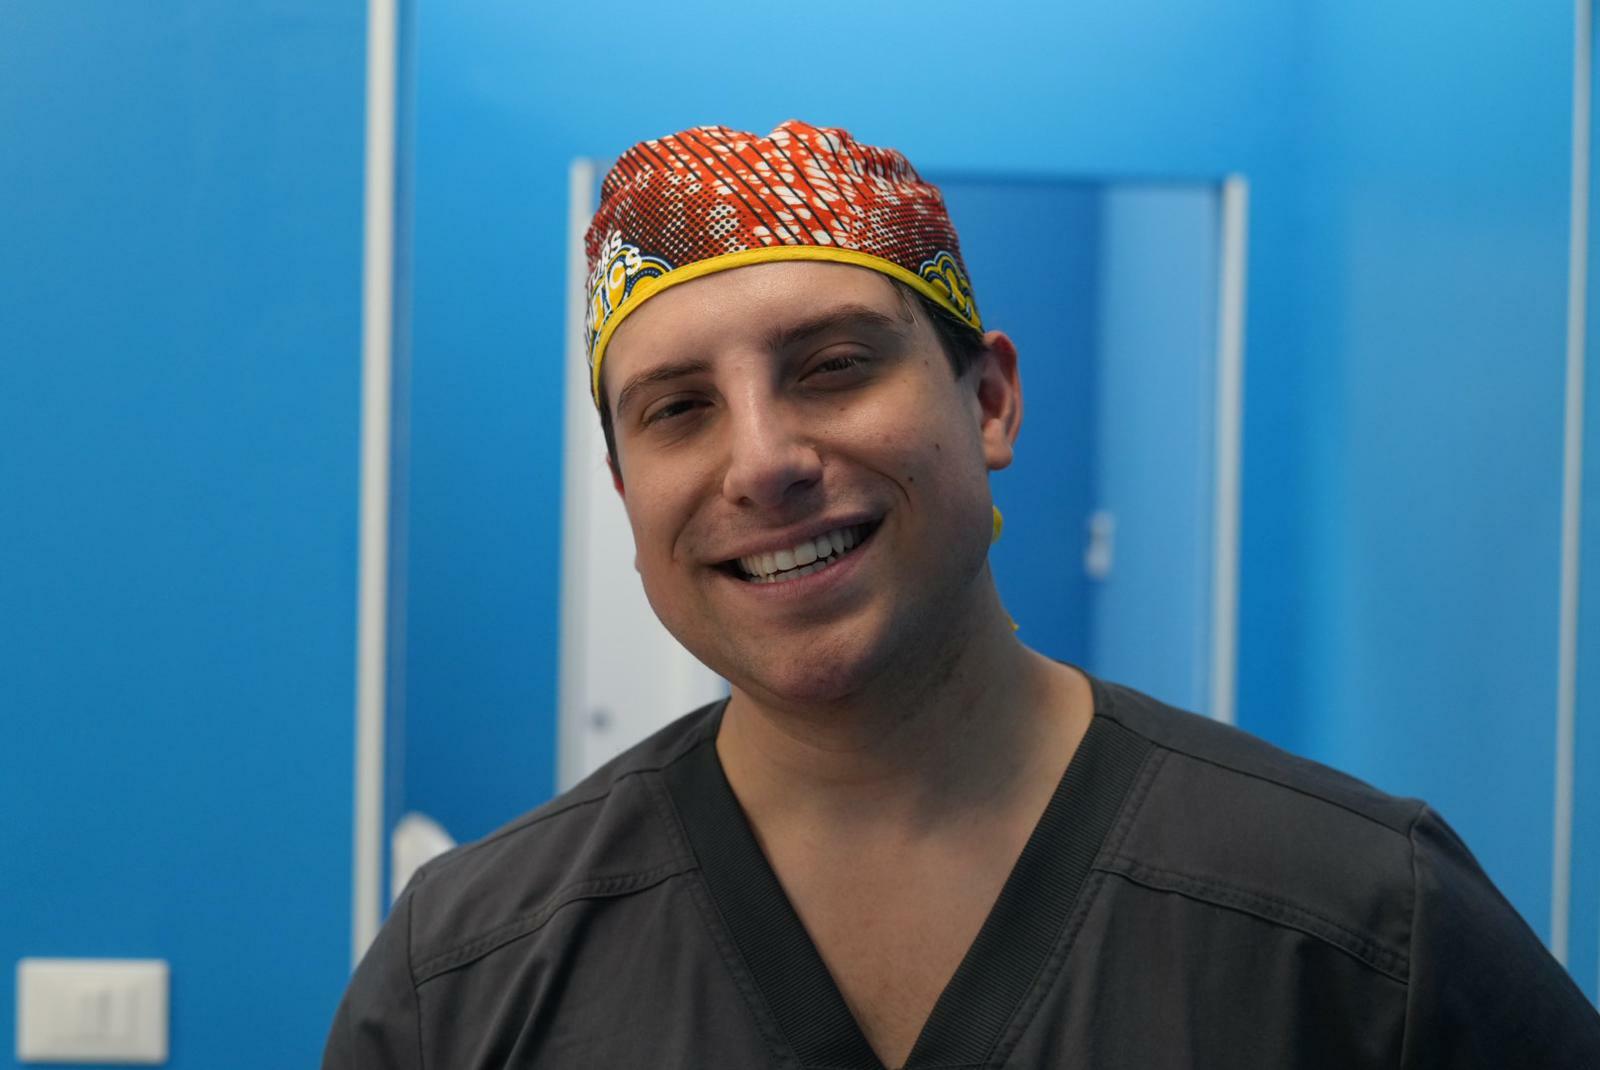 Il chirurgo Doctor Aesthetic Franco parla dei vantaggi e svantaggi del suo lavoro